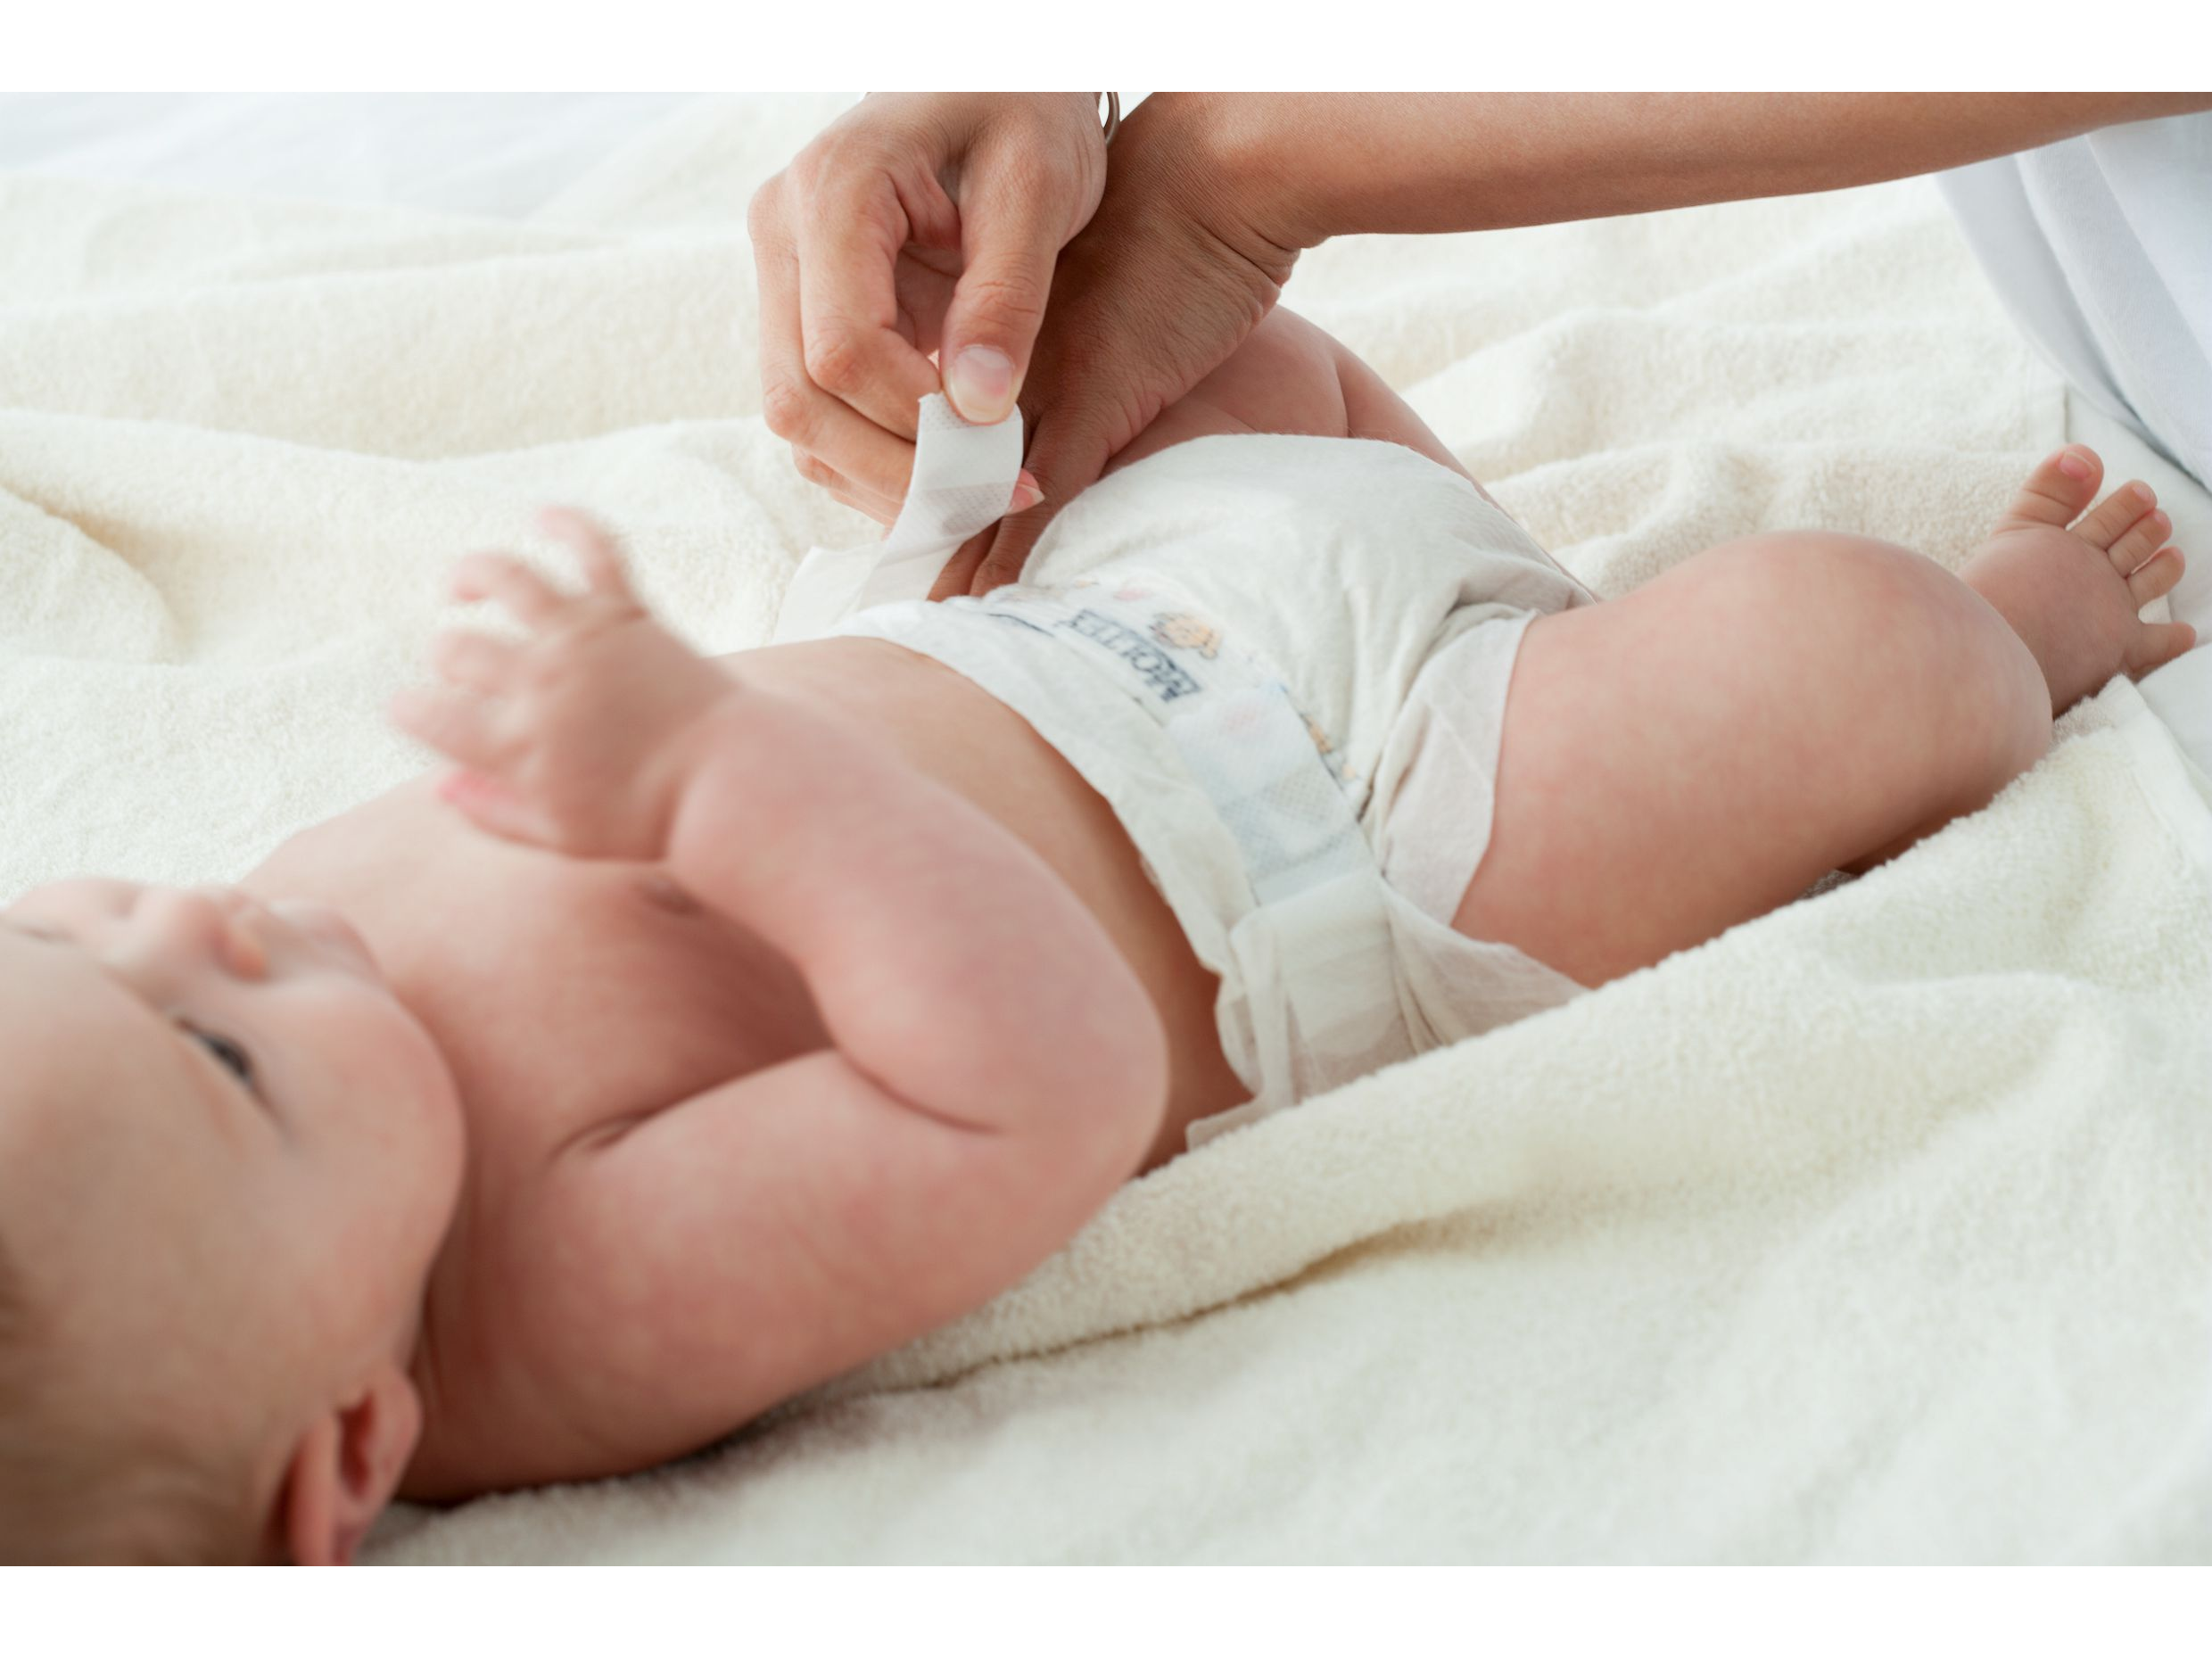 Les colles et adhésifs Bostik sont utilisés dans les couches pour bébé